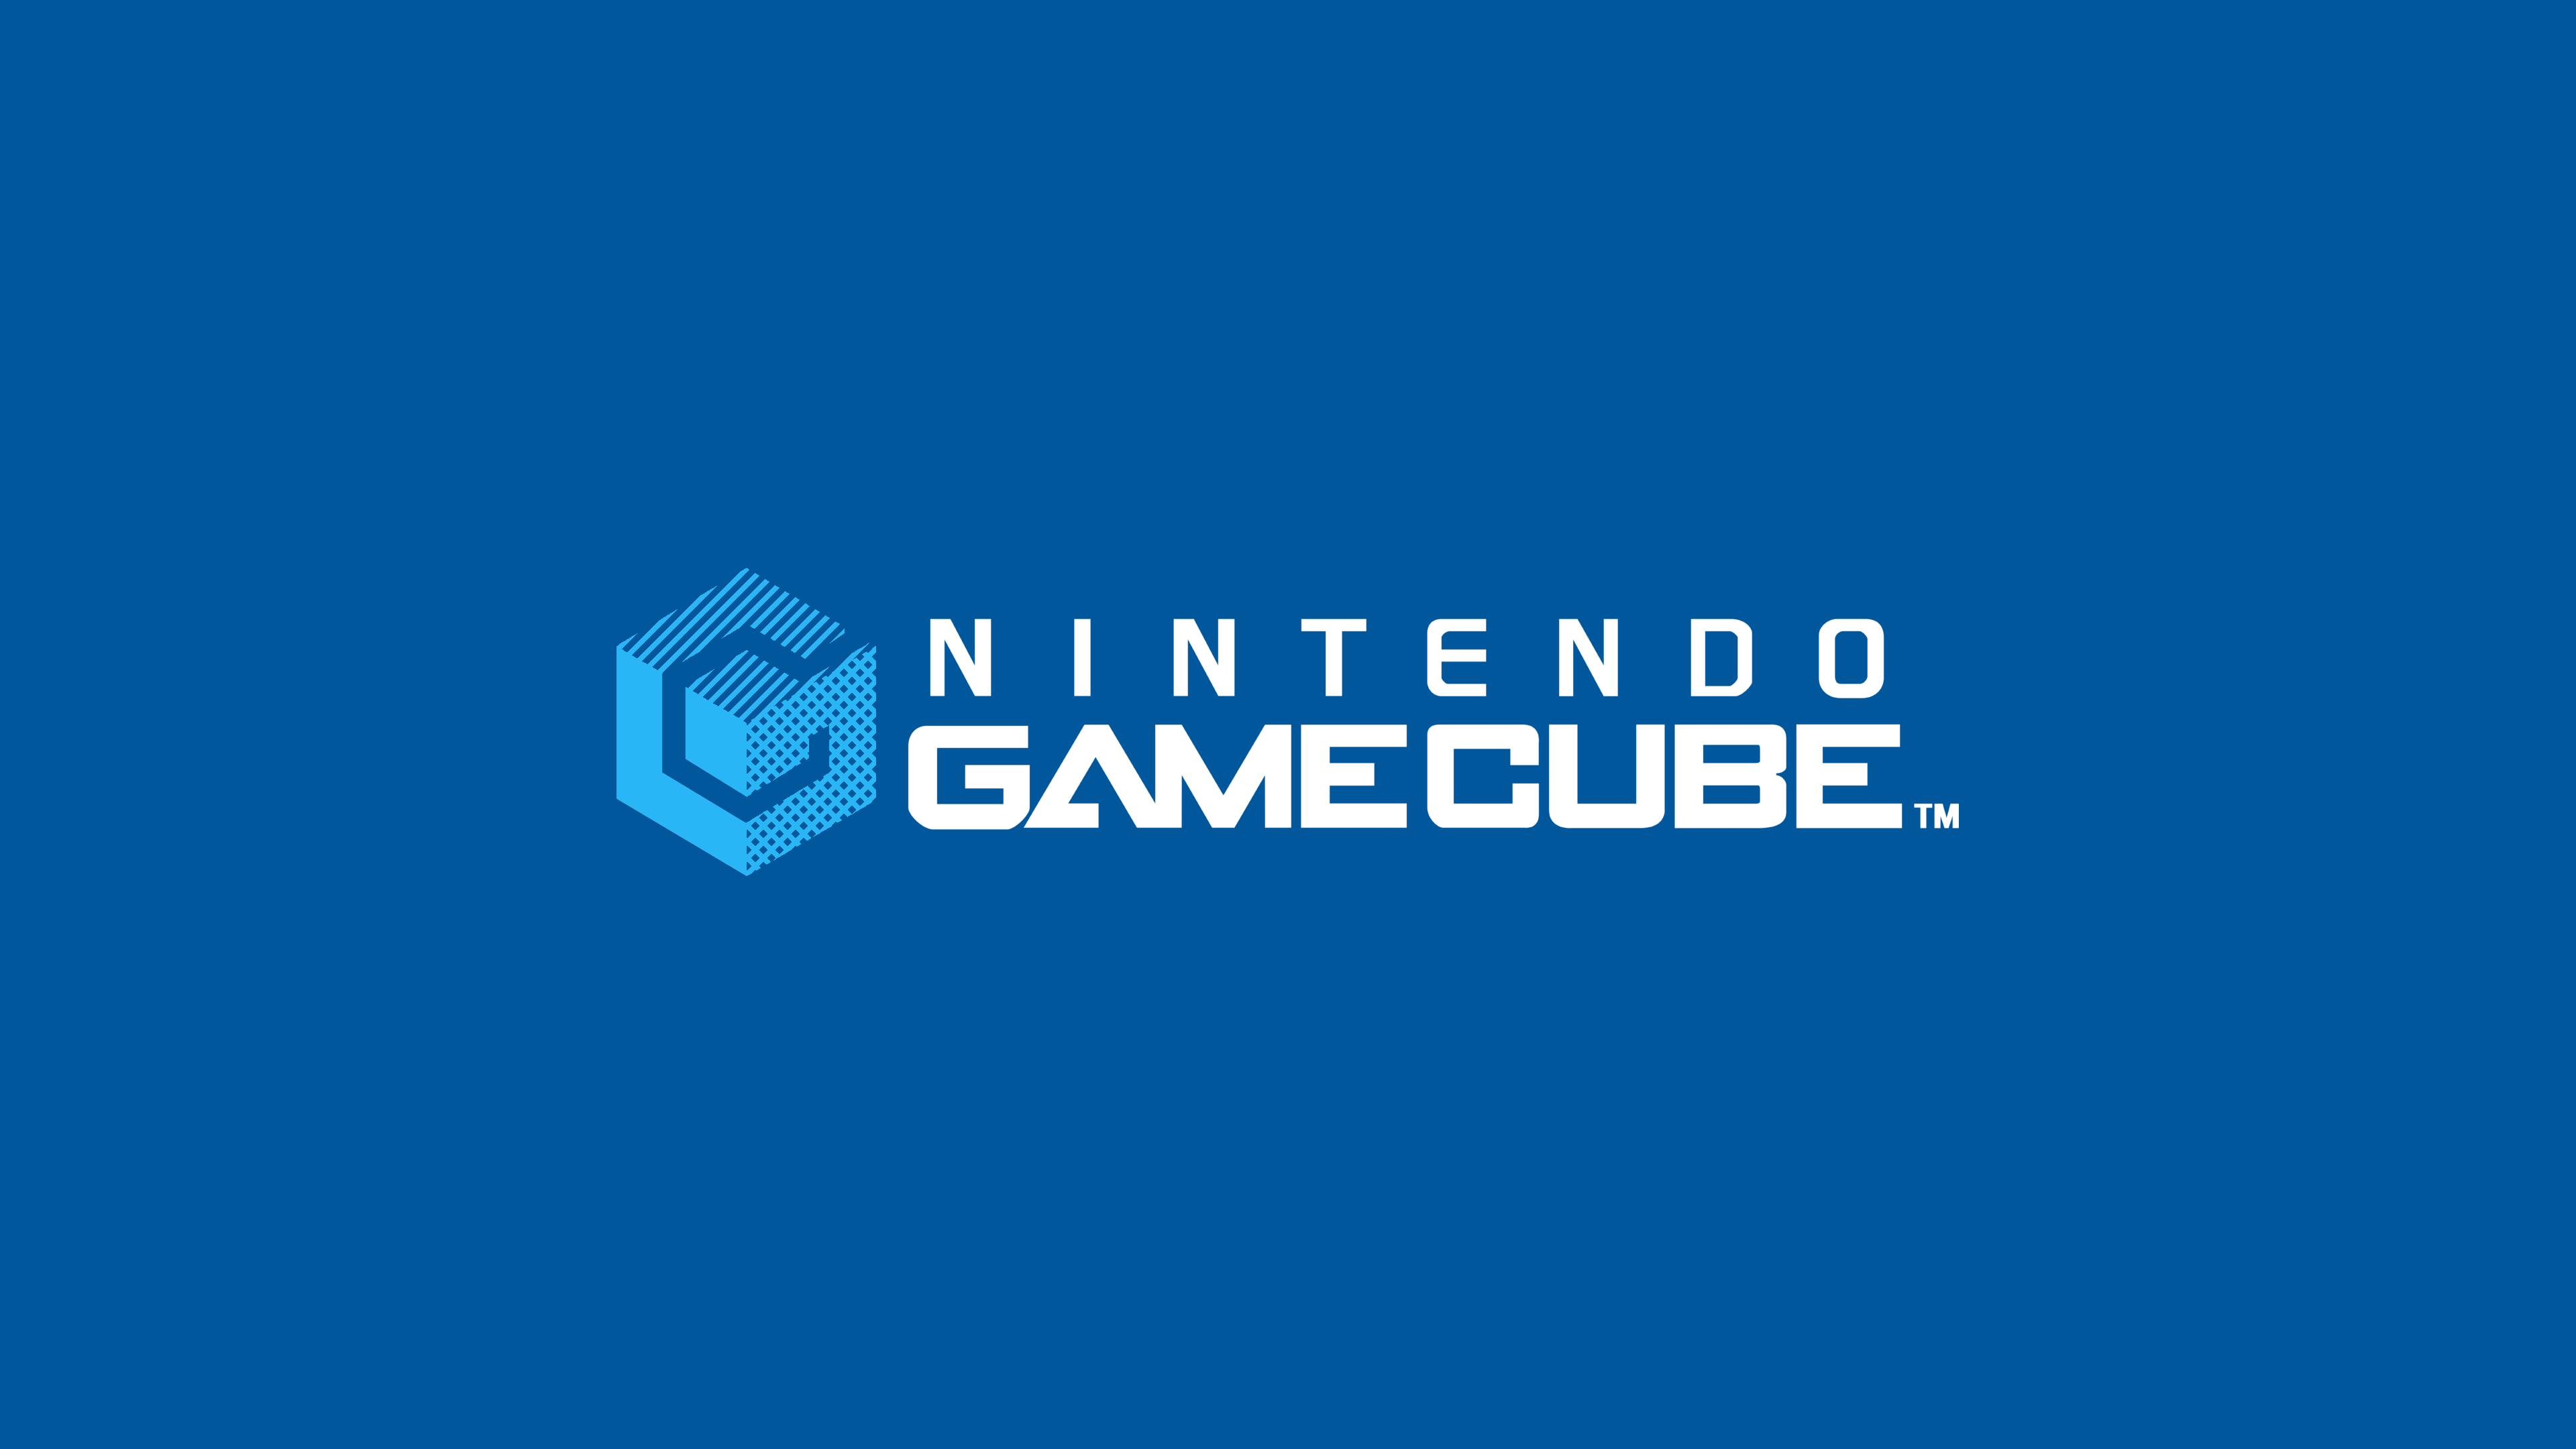 Nintendo Gamecube Widescreen Logo Wallpaper 61654 3840x2160px